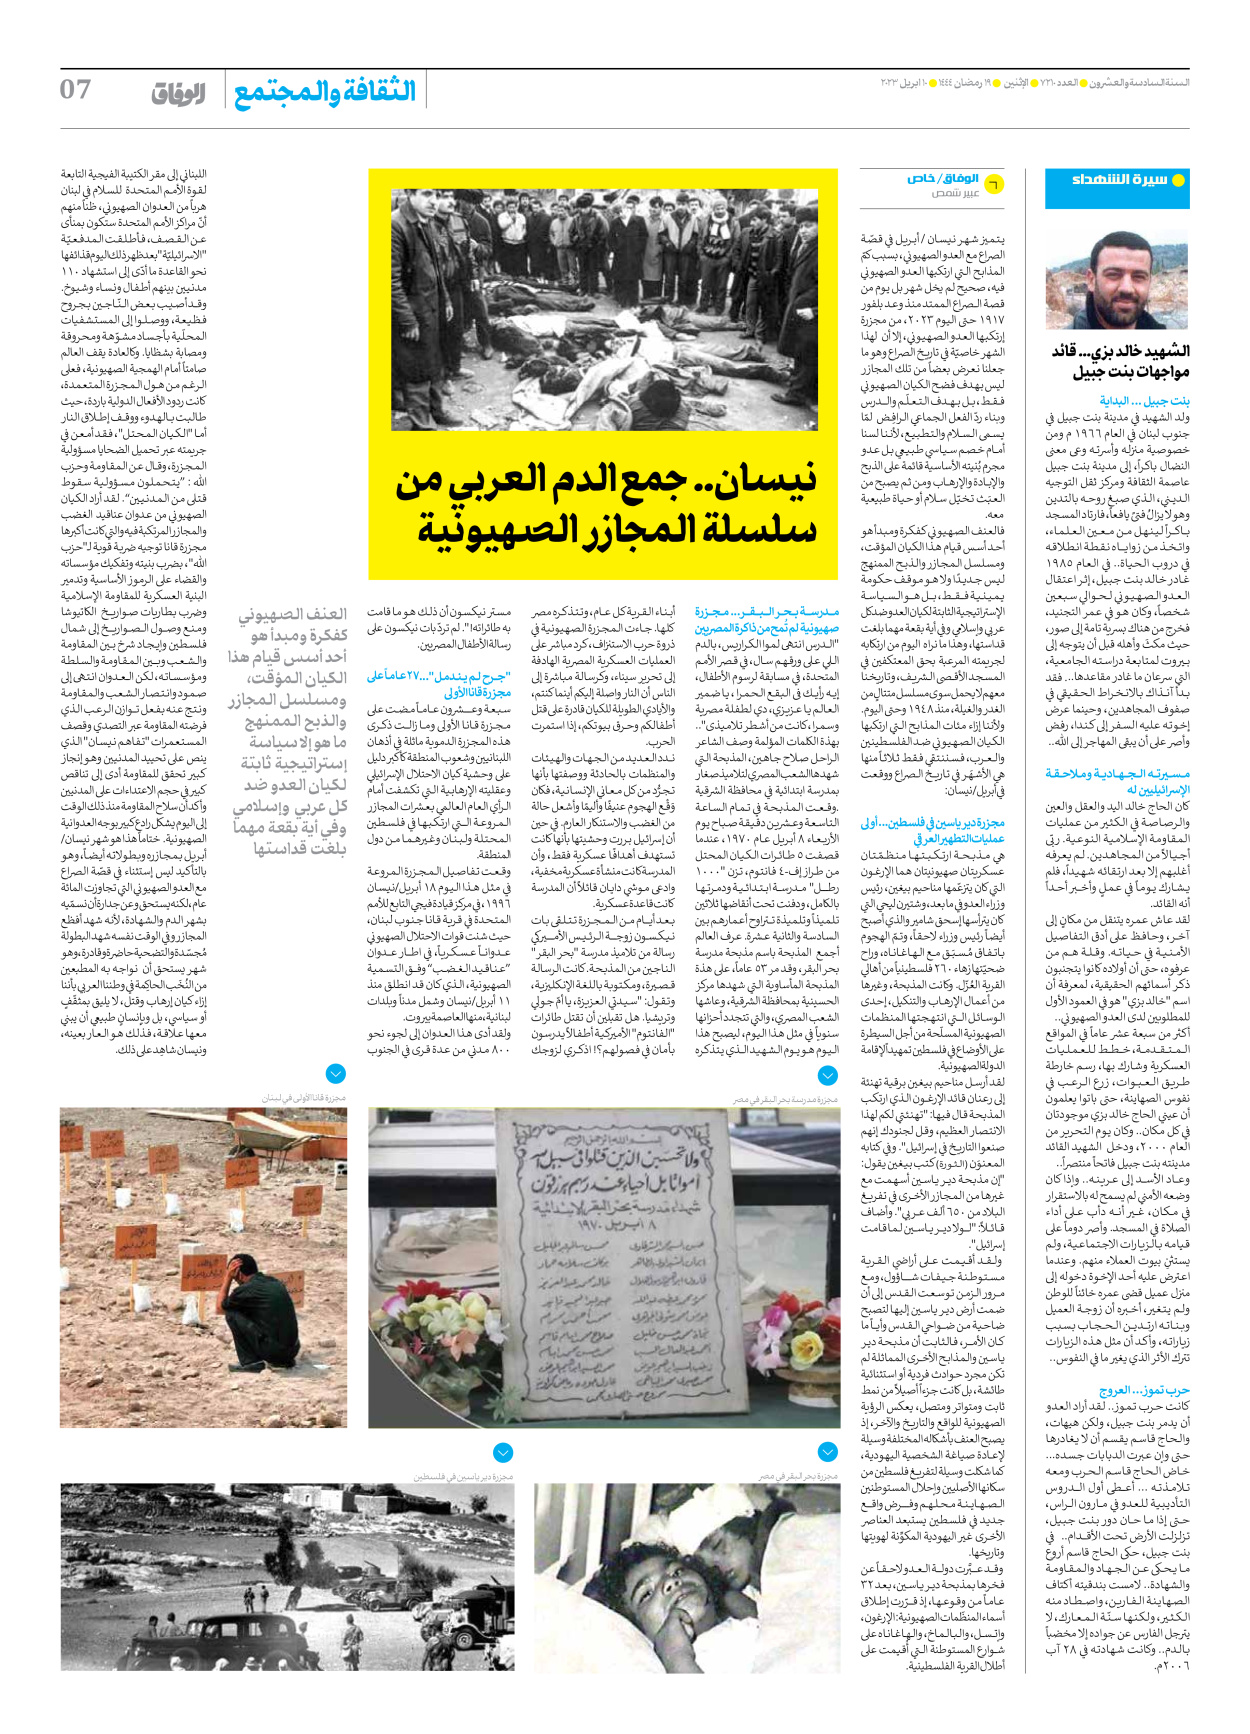 صحیفة ایران الدولیة الوفاق - العدد سبعة آلاف ومائتان وعشرة - ١٠ أبريل ٢٠٢٣ - الصفحة ۷